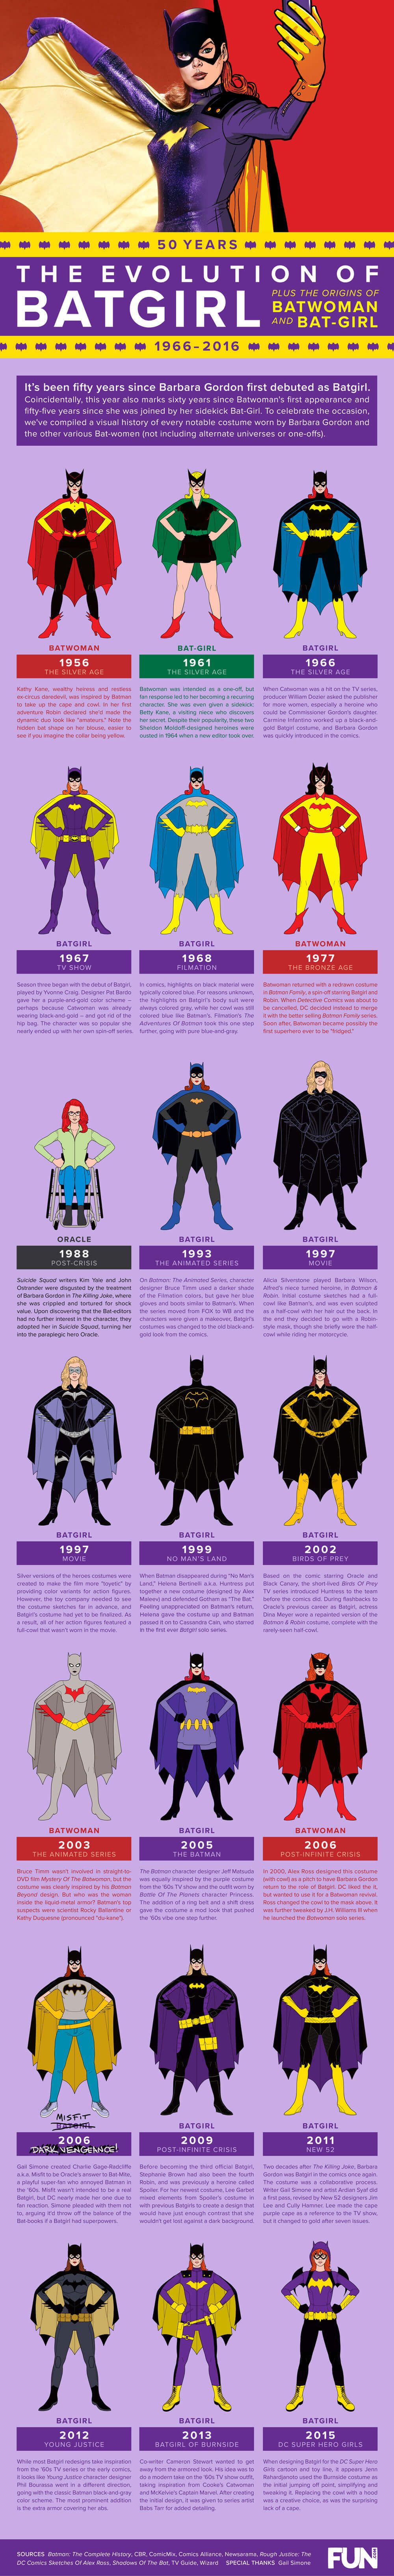 The Evolution of Batgirl